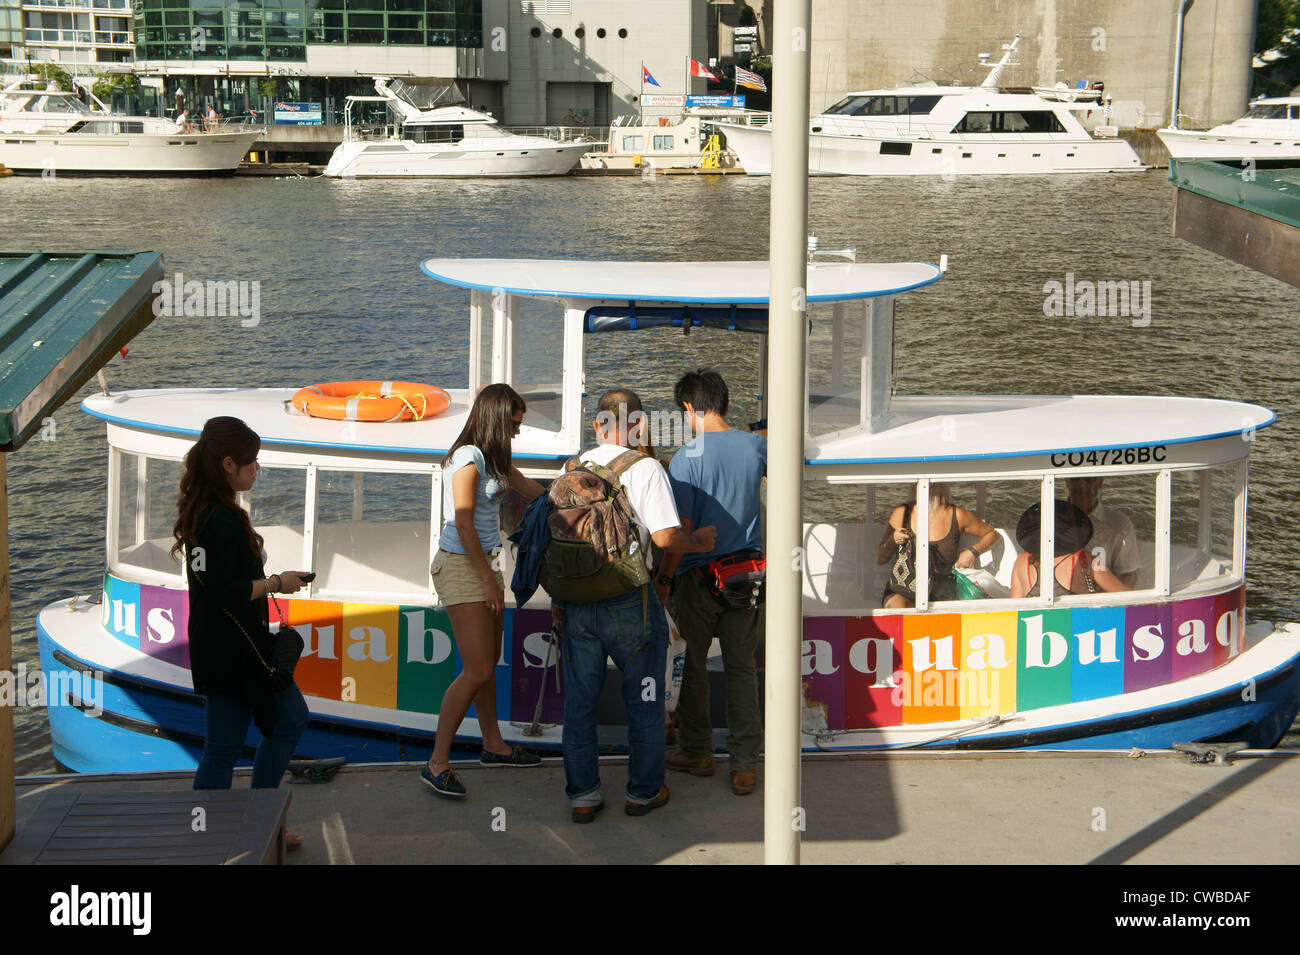 La gente de embarque del aquabus ferry, la isla de Granville, Vancouver, British Columbia, Canadá Foto de stock